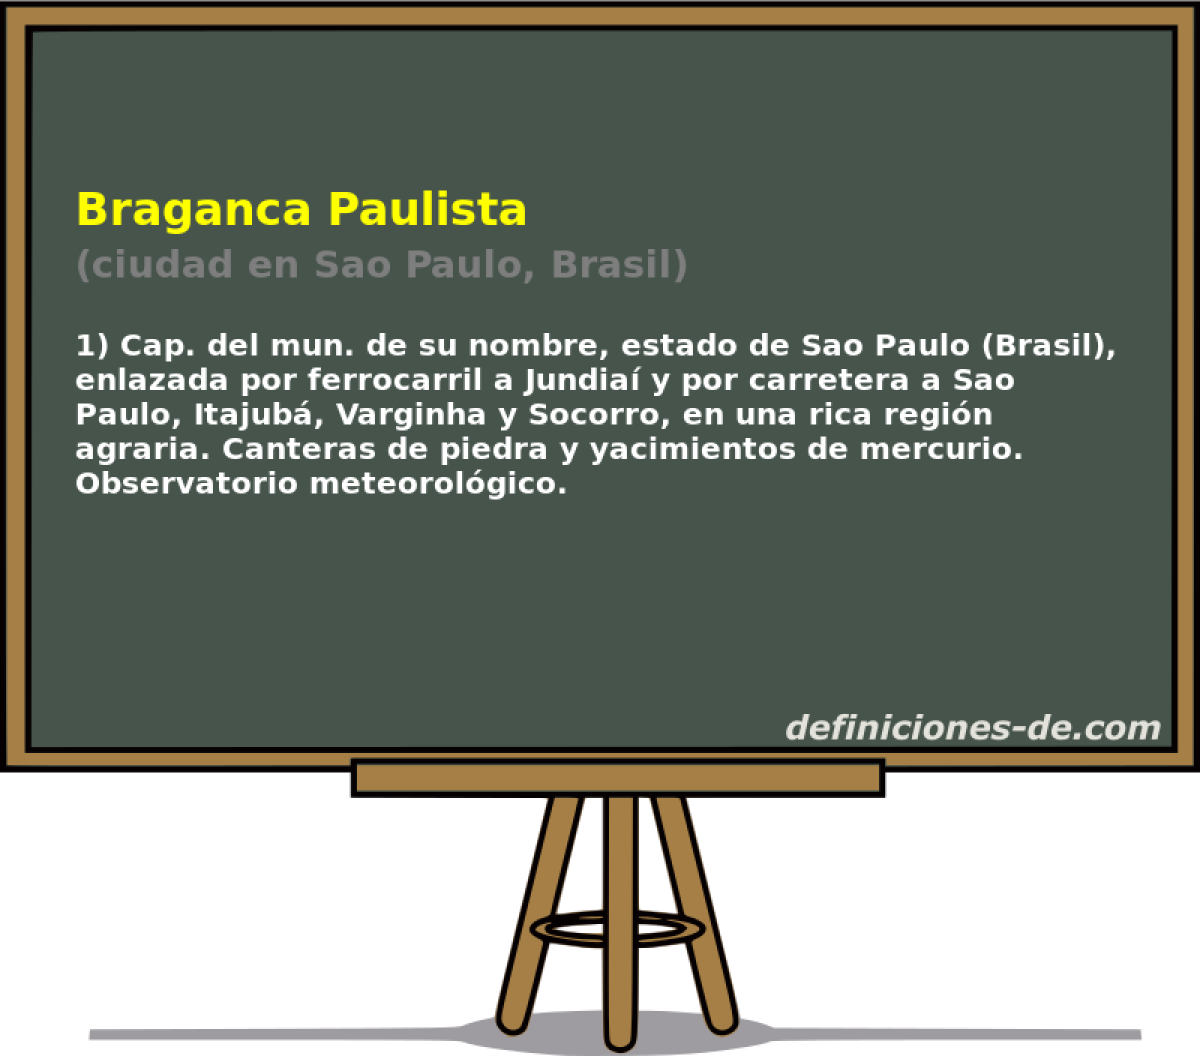 Braganca Paulista (ciudad en Sao Paulo, Brasil)